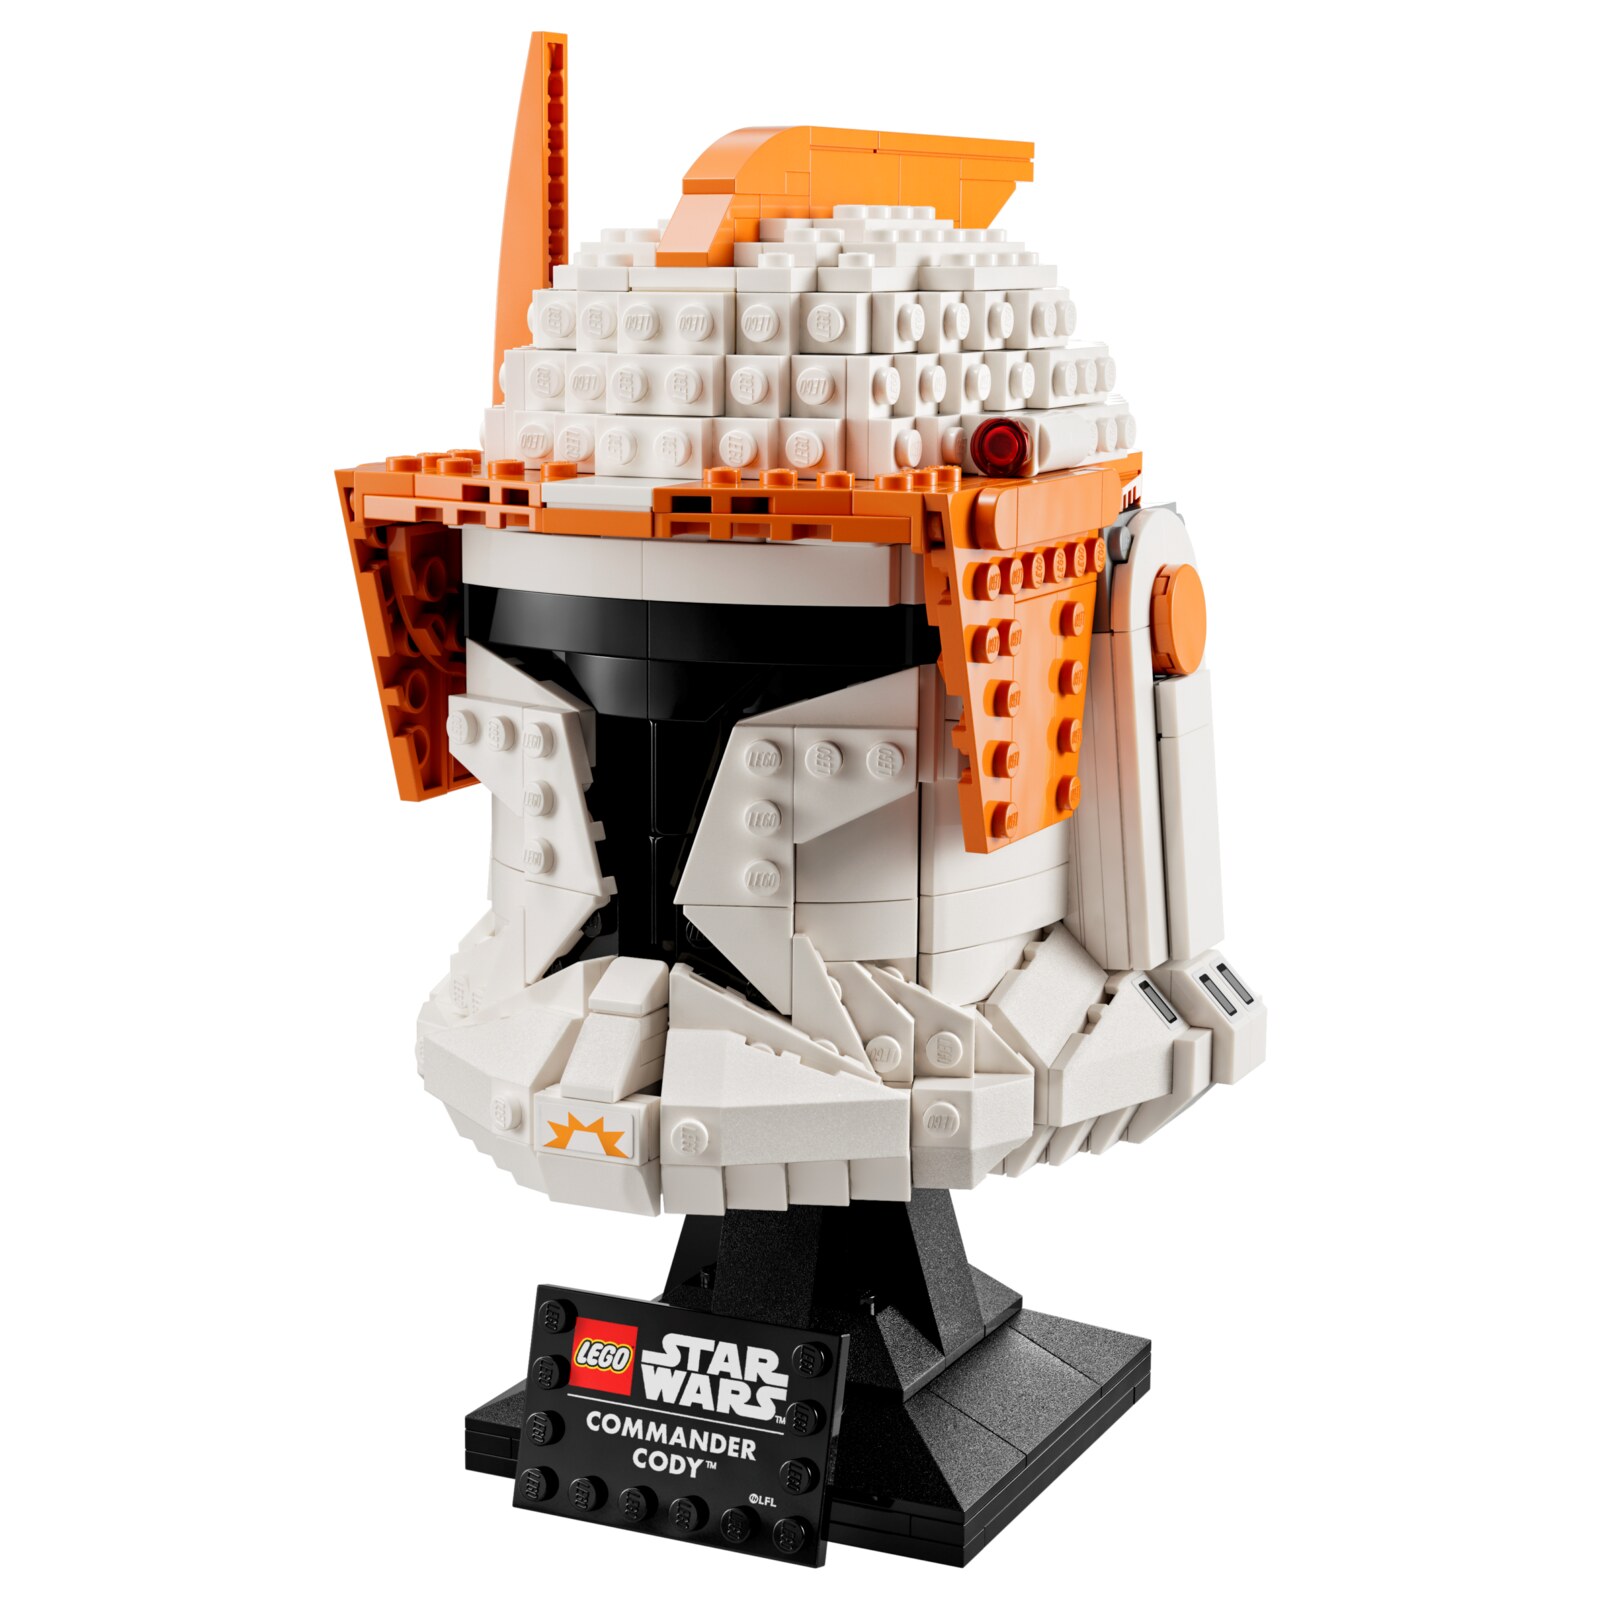 Конструктор LEGO Star Wars 75350 Шлем командира клонов Коди